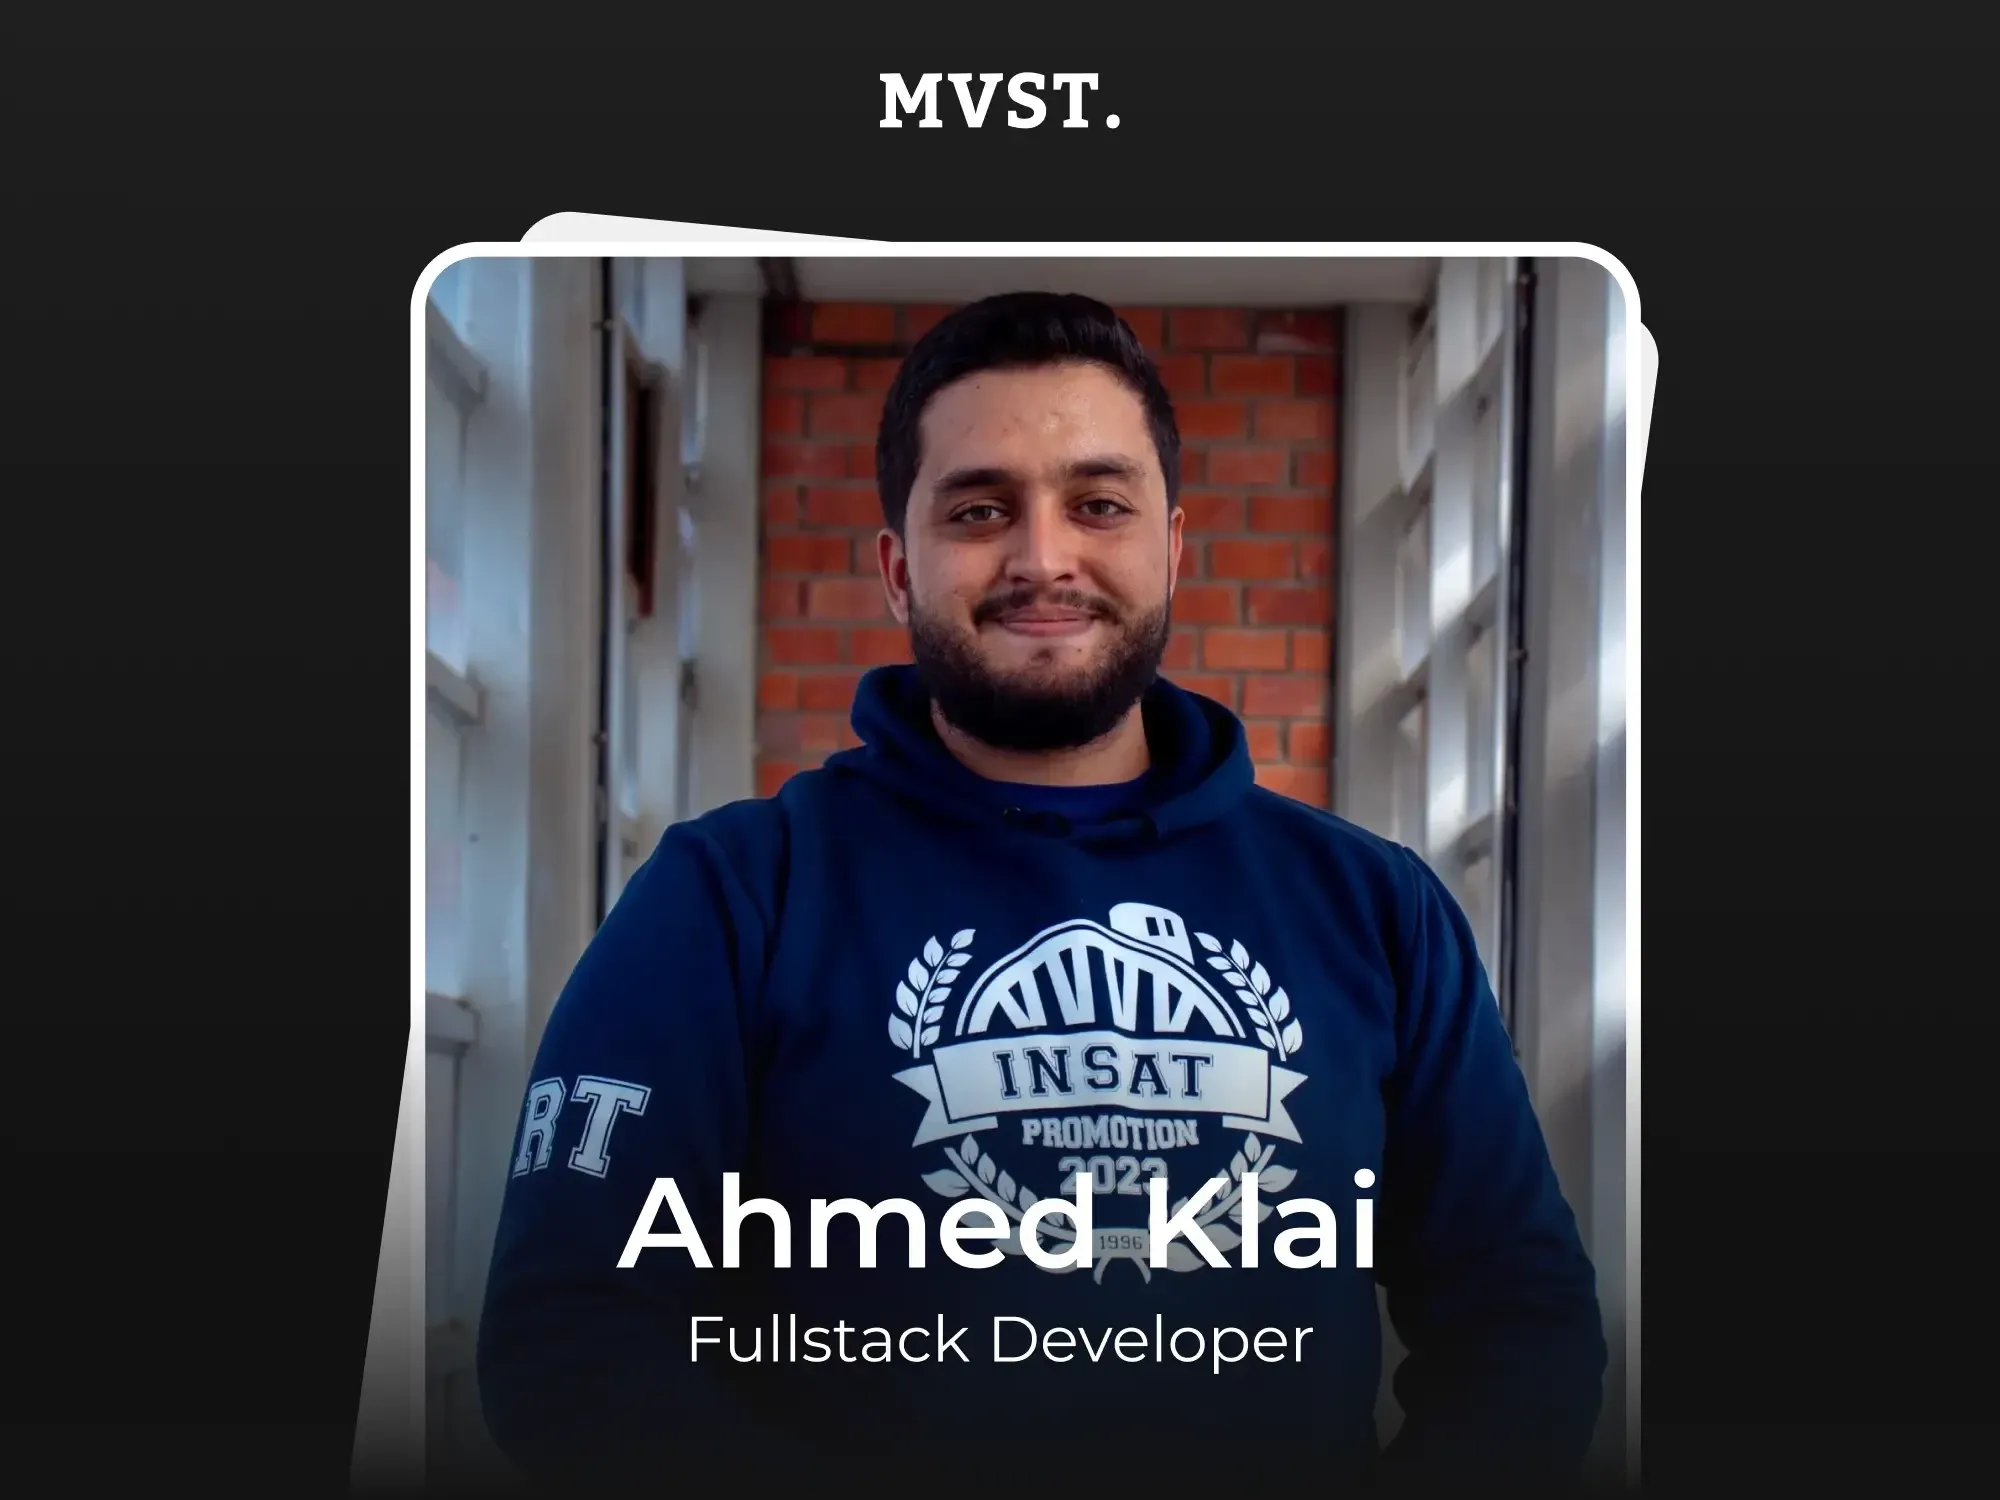 Willkommen bei MVST, Ahmed!